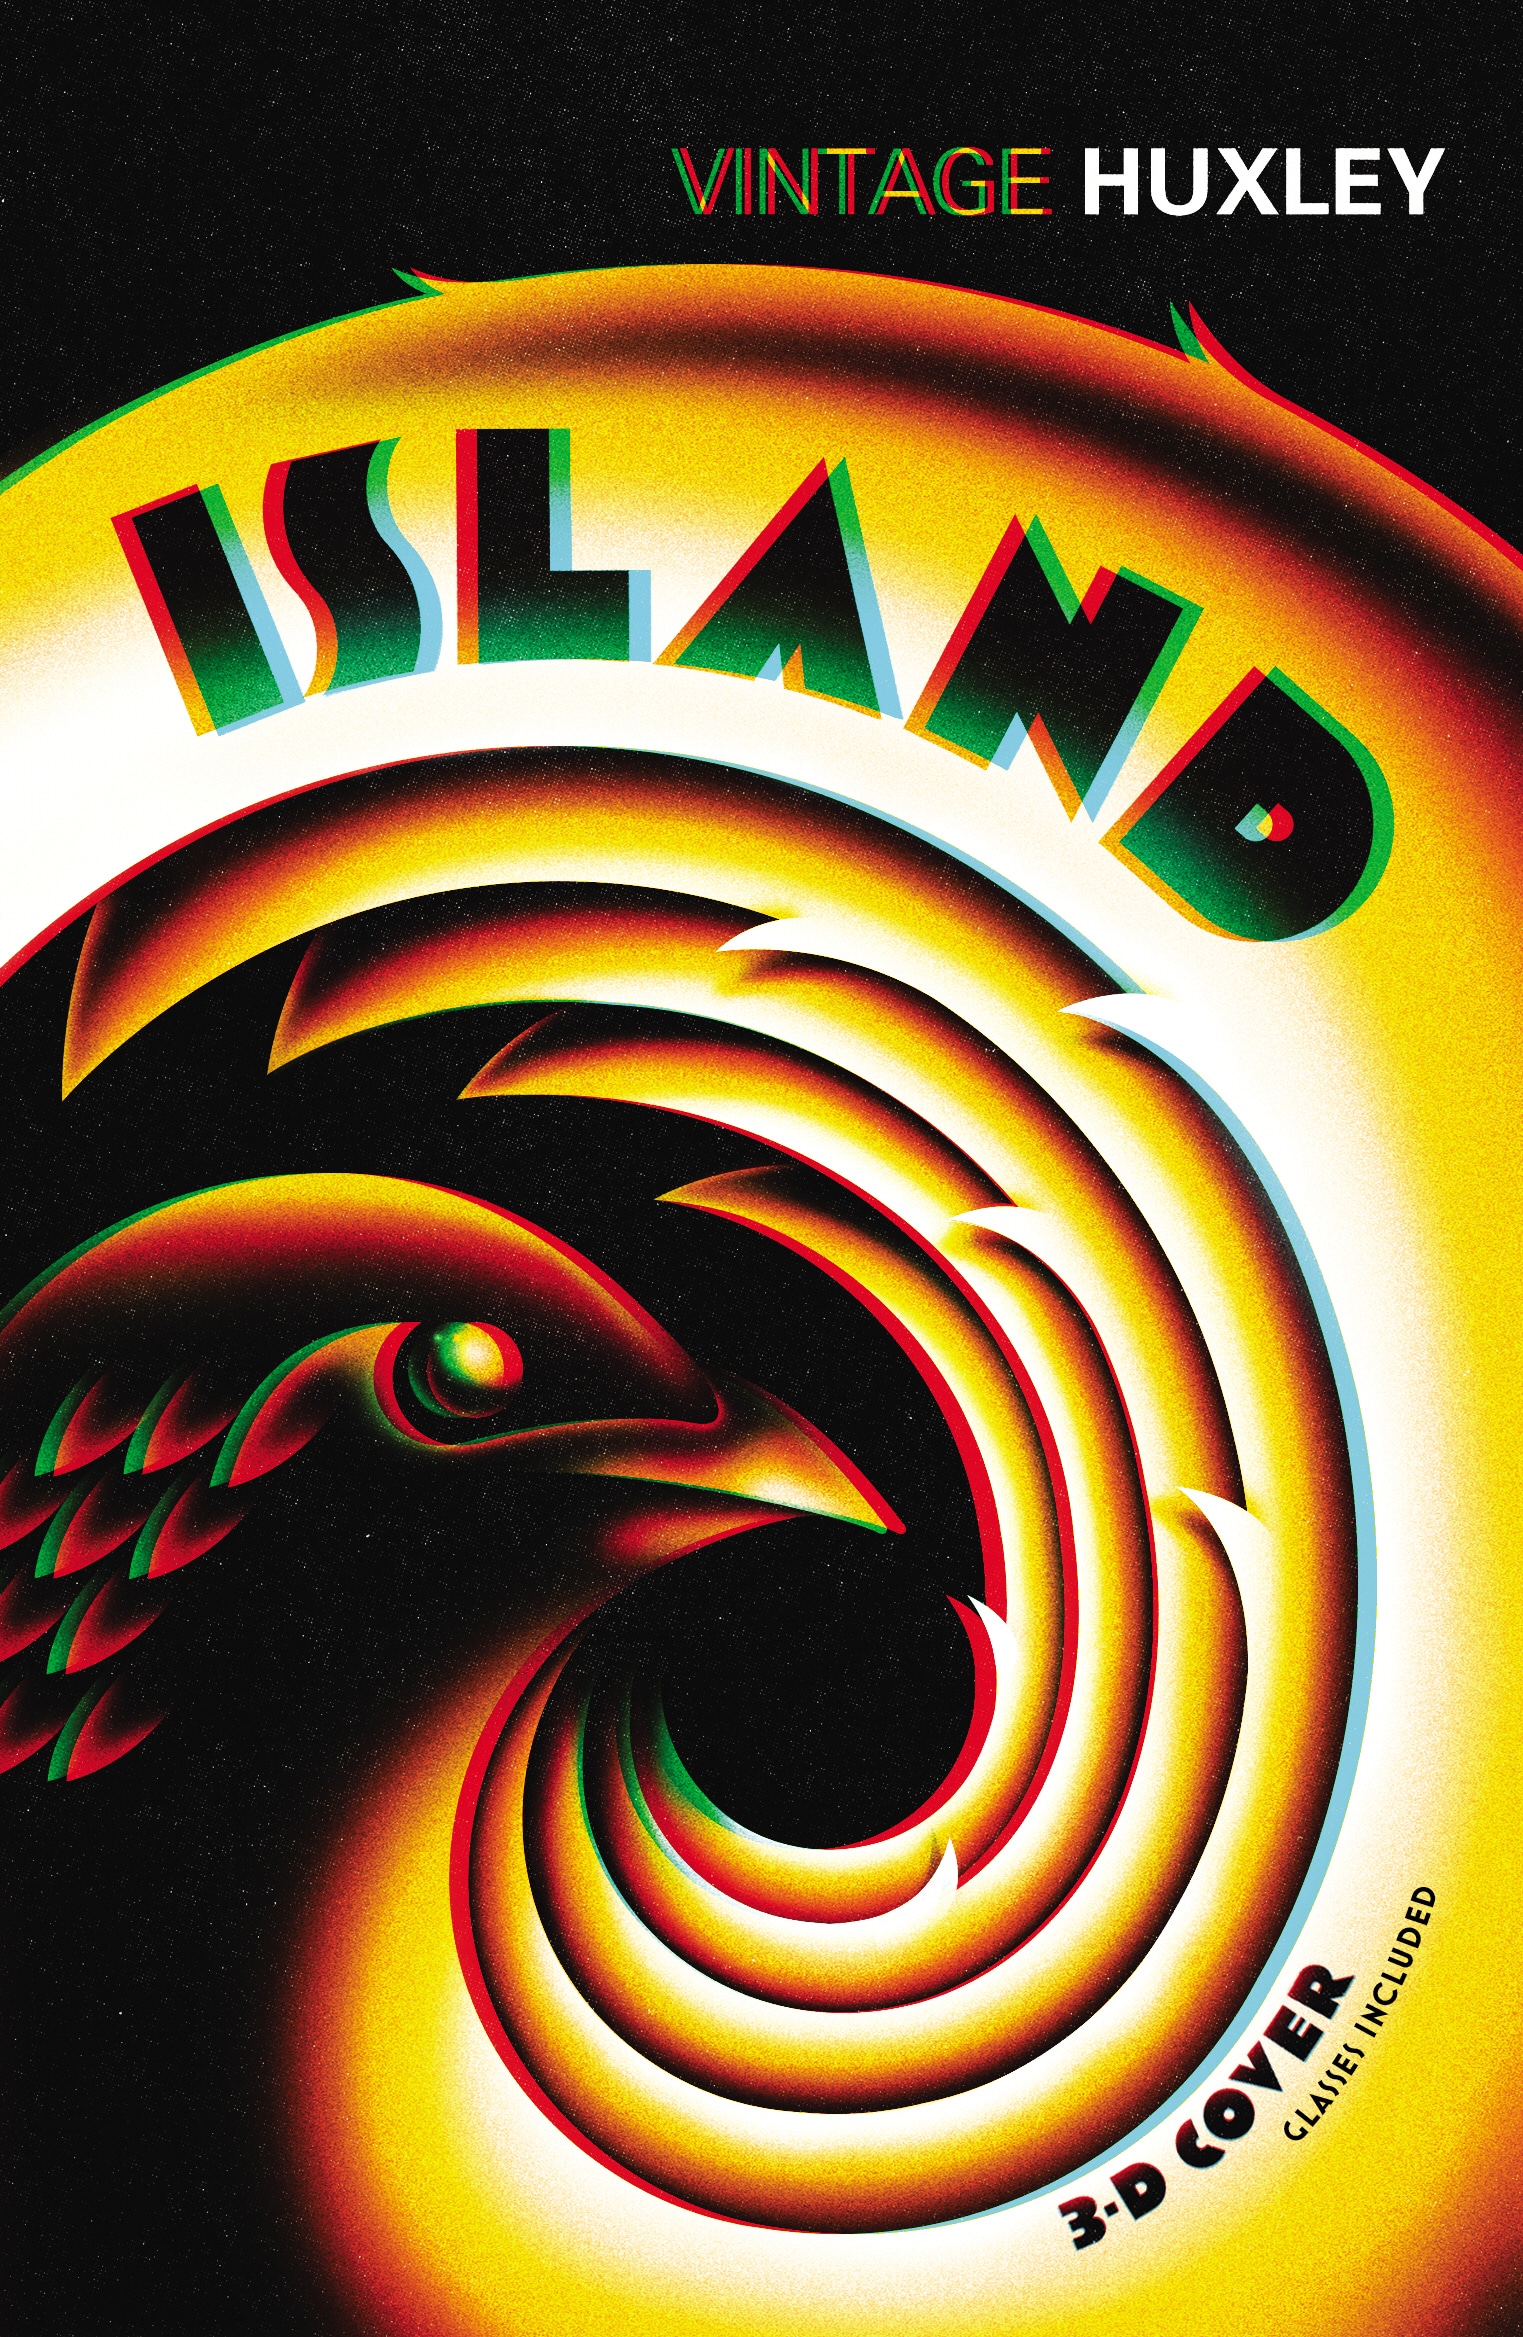 Book “Island” by Aldous Huxley, David Bradshaw — April 7, 2005